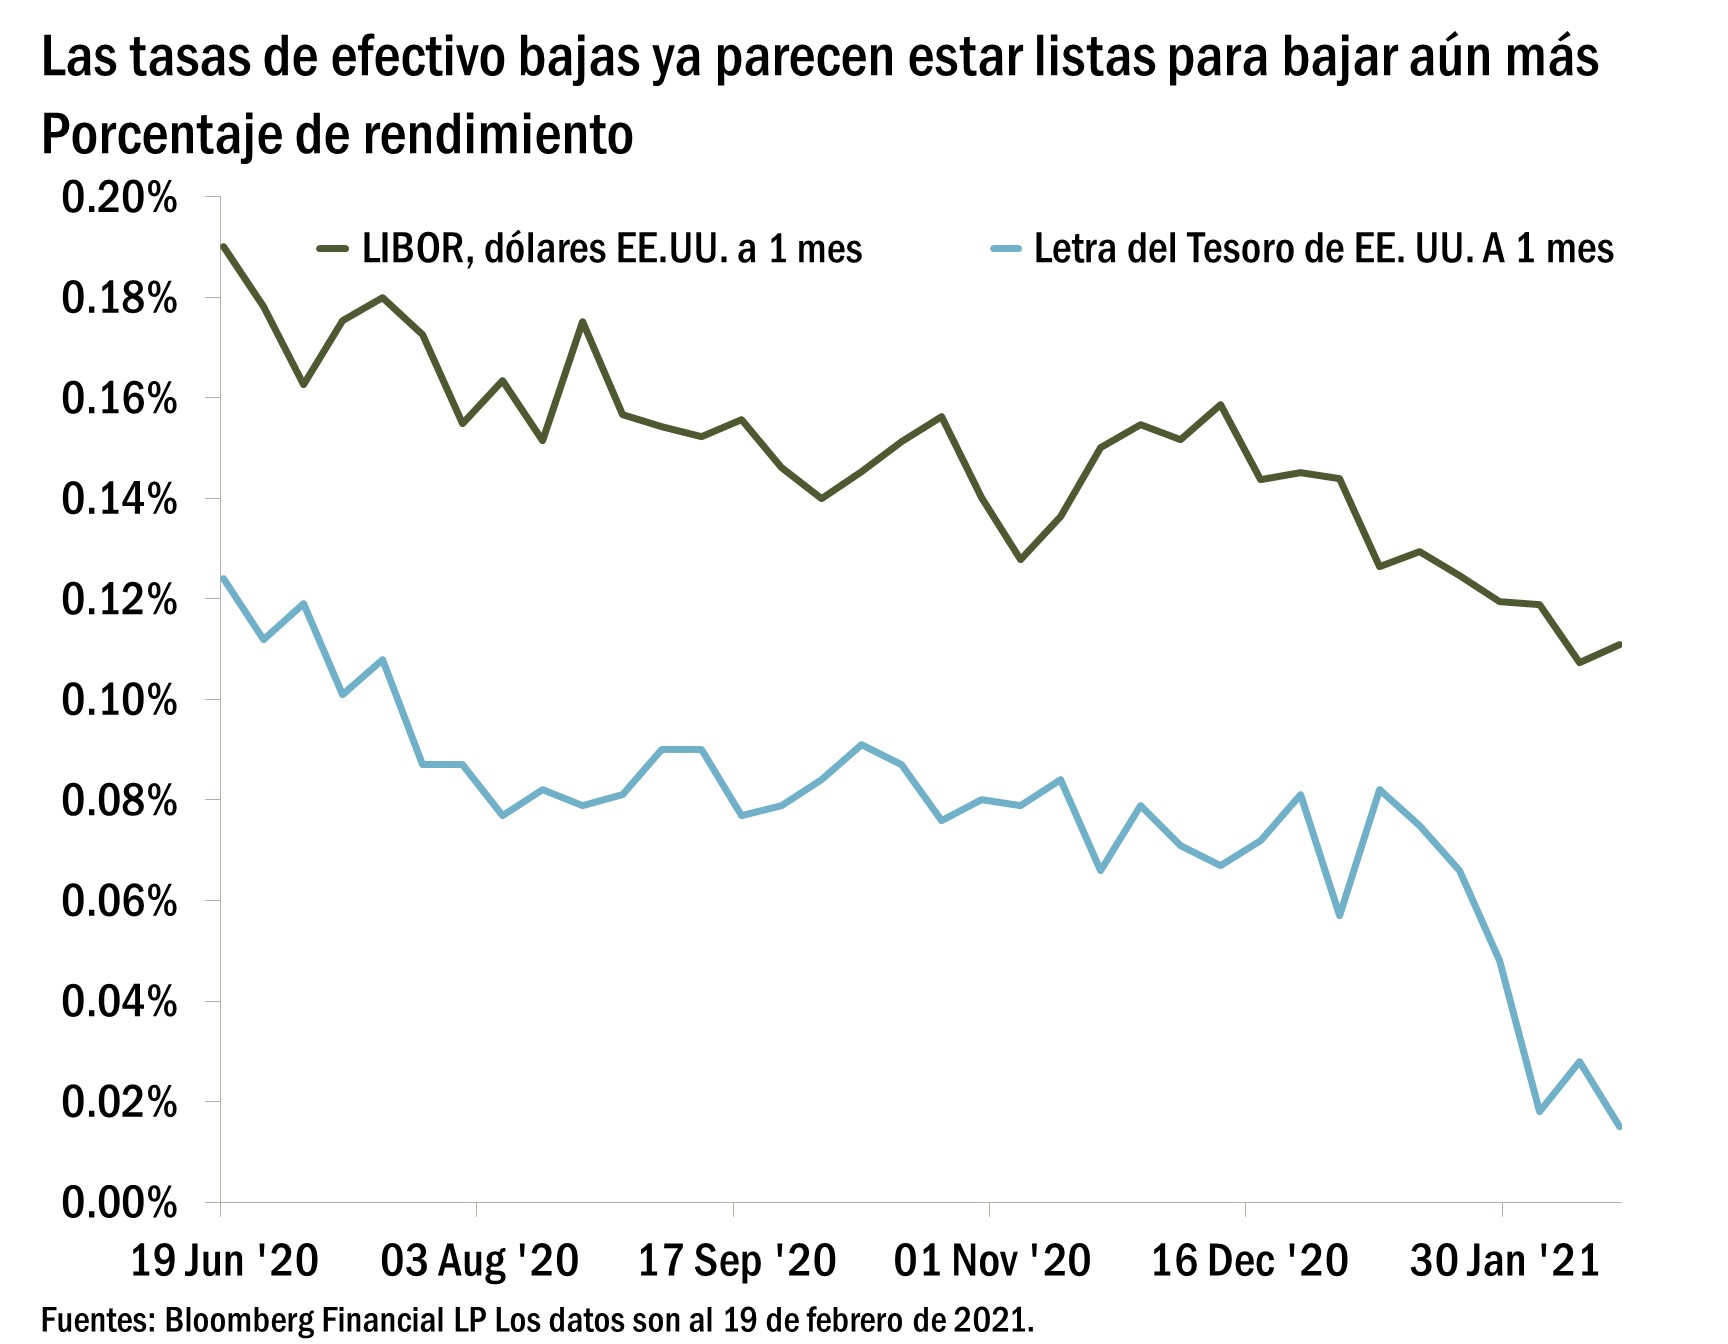 El gráfico muestra la tasa LIBOR en dólares a 1 mes y el rendimiento en dólares estadounidenses a 1 mes en Letras del Tesoro del 19 de junio de 2020 al 19 de febrero de 2021. Muestra que el rendimiento de ambos instrumentos ha ido disminuyendo de manera constante durante este período de tiempo, con el rendimiento de tasa LIBOR en dólares a 1 mes cayendo de 0,19% a 0,11% y el rendimiento 1 mes en Letras del Tesoro cayendo del 0,12% al 0,01%. 